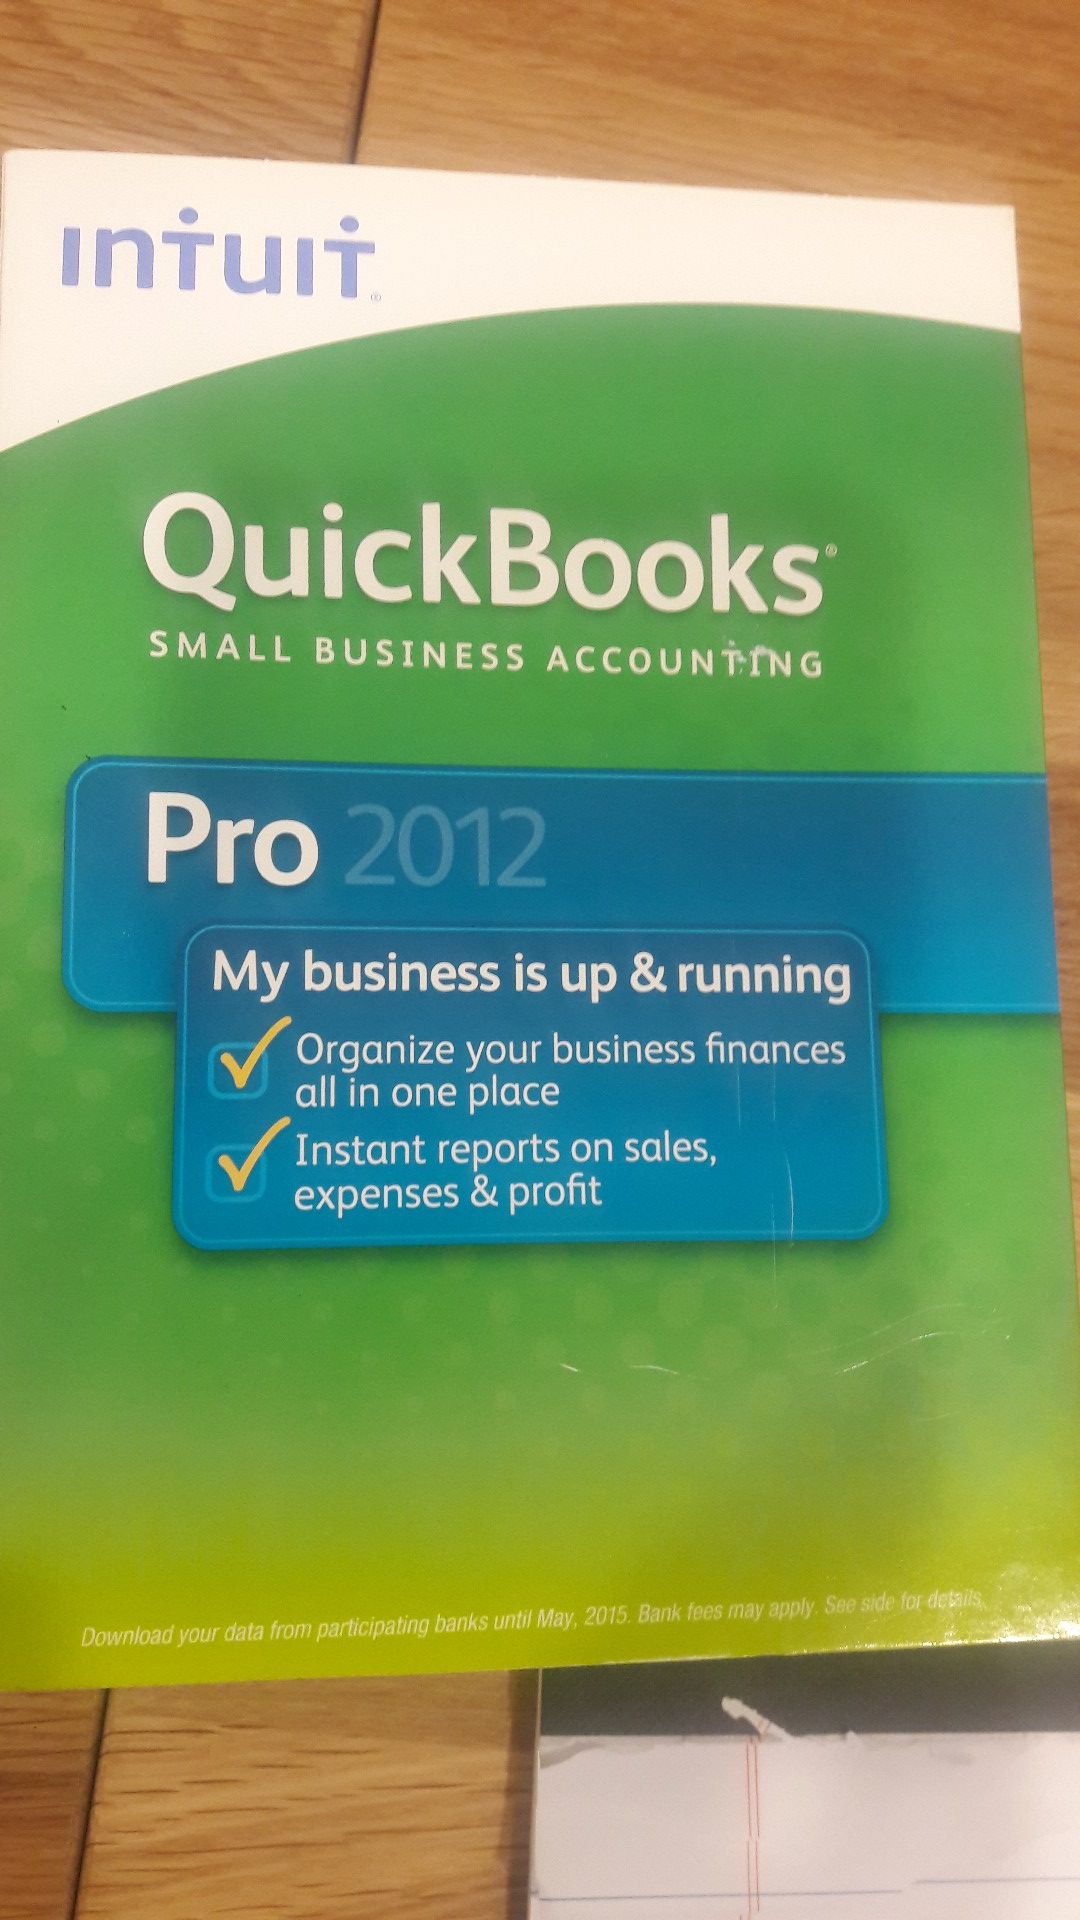 Quick books pro 2012